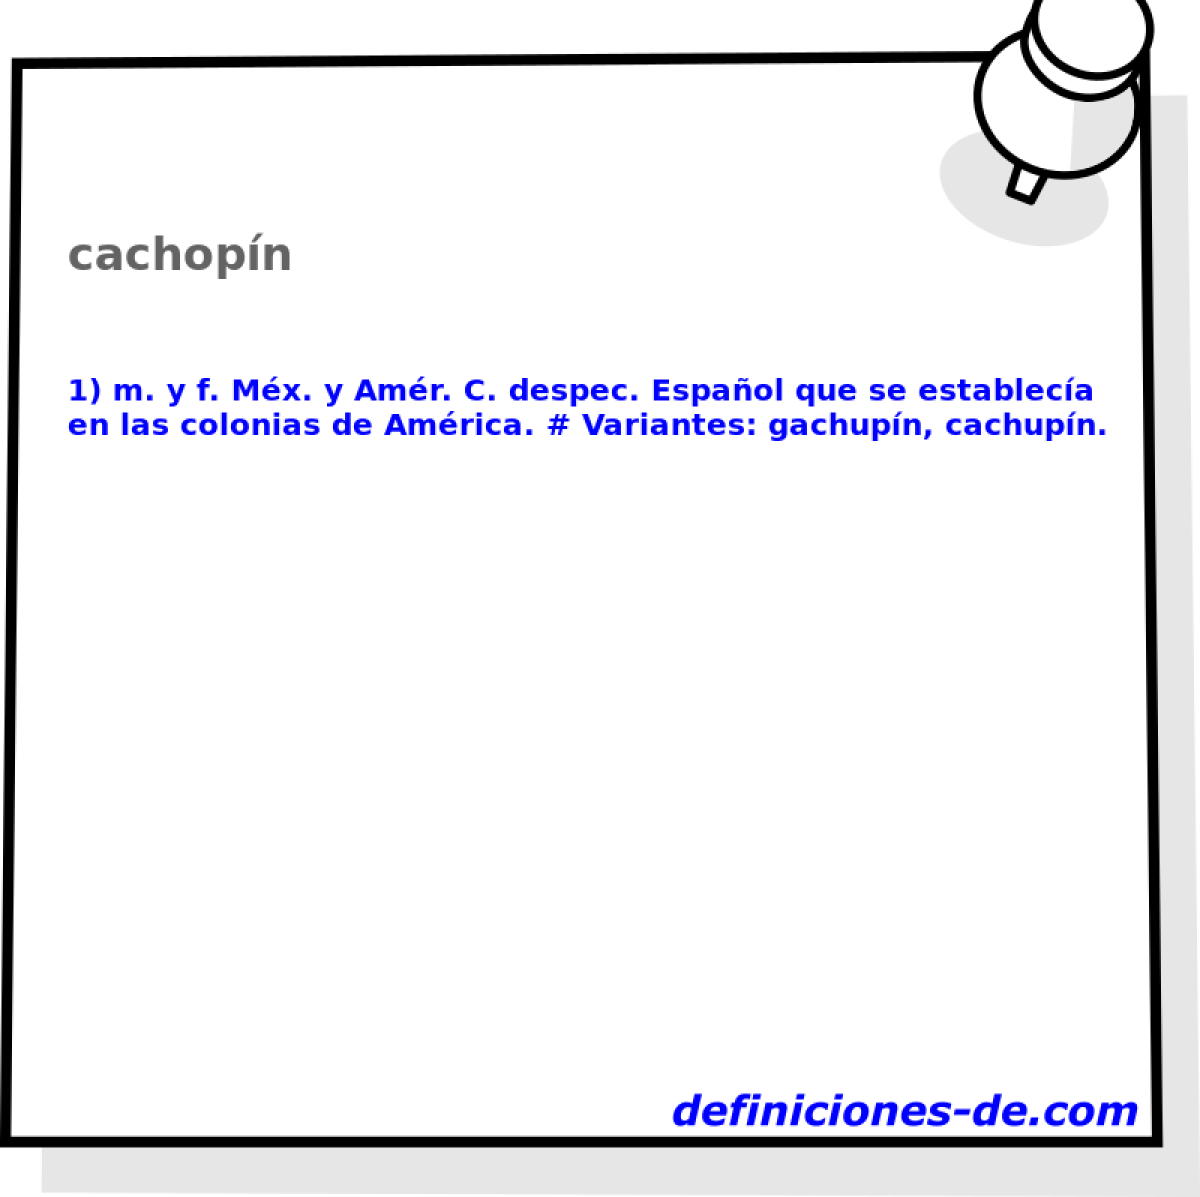 cachopn 